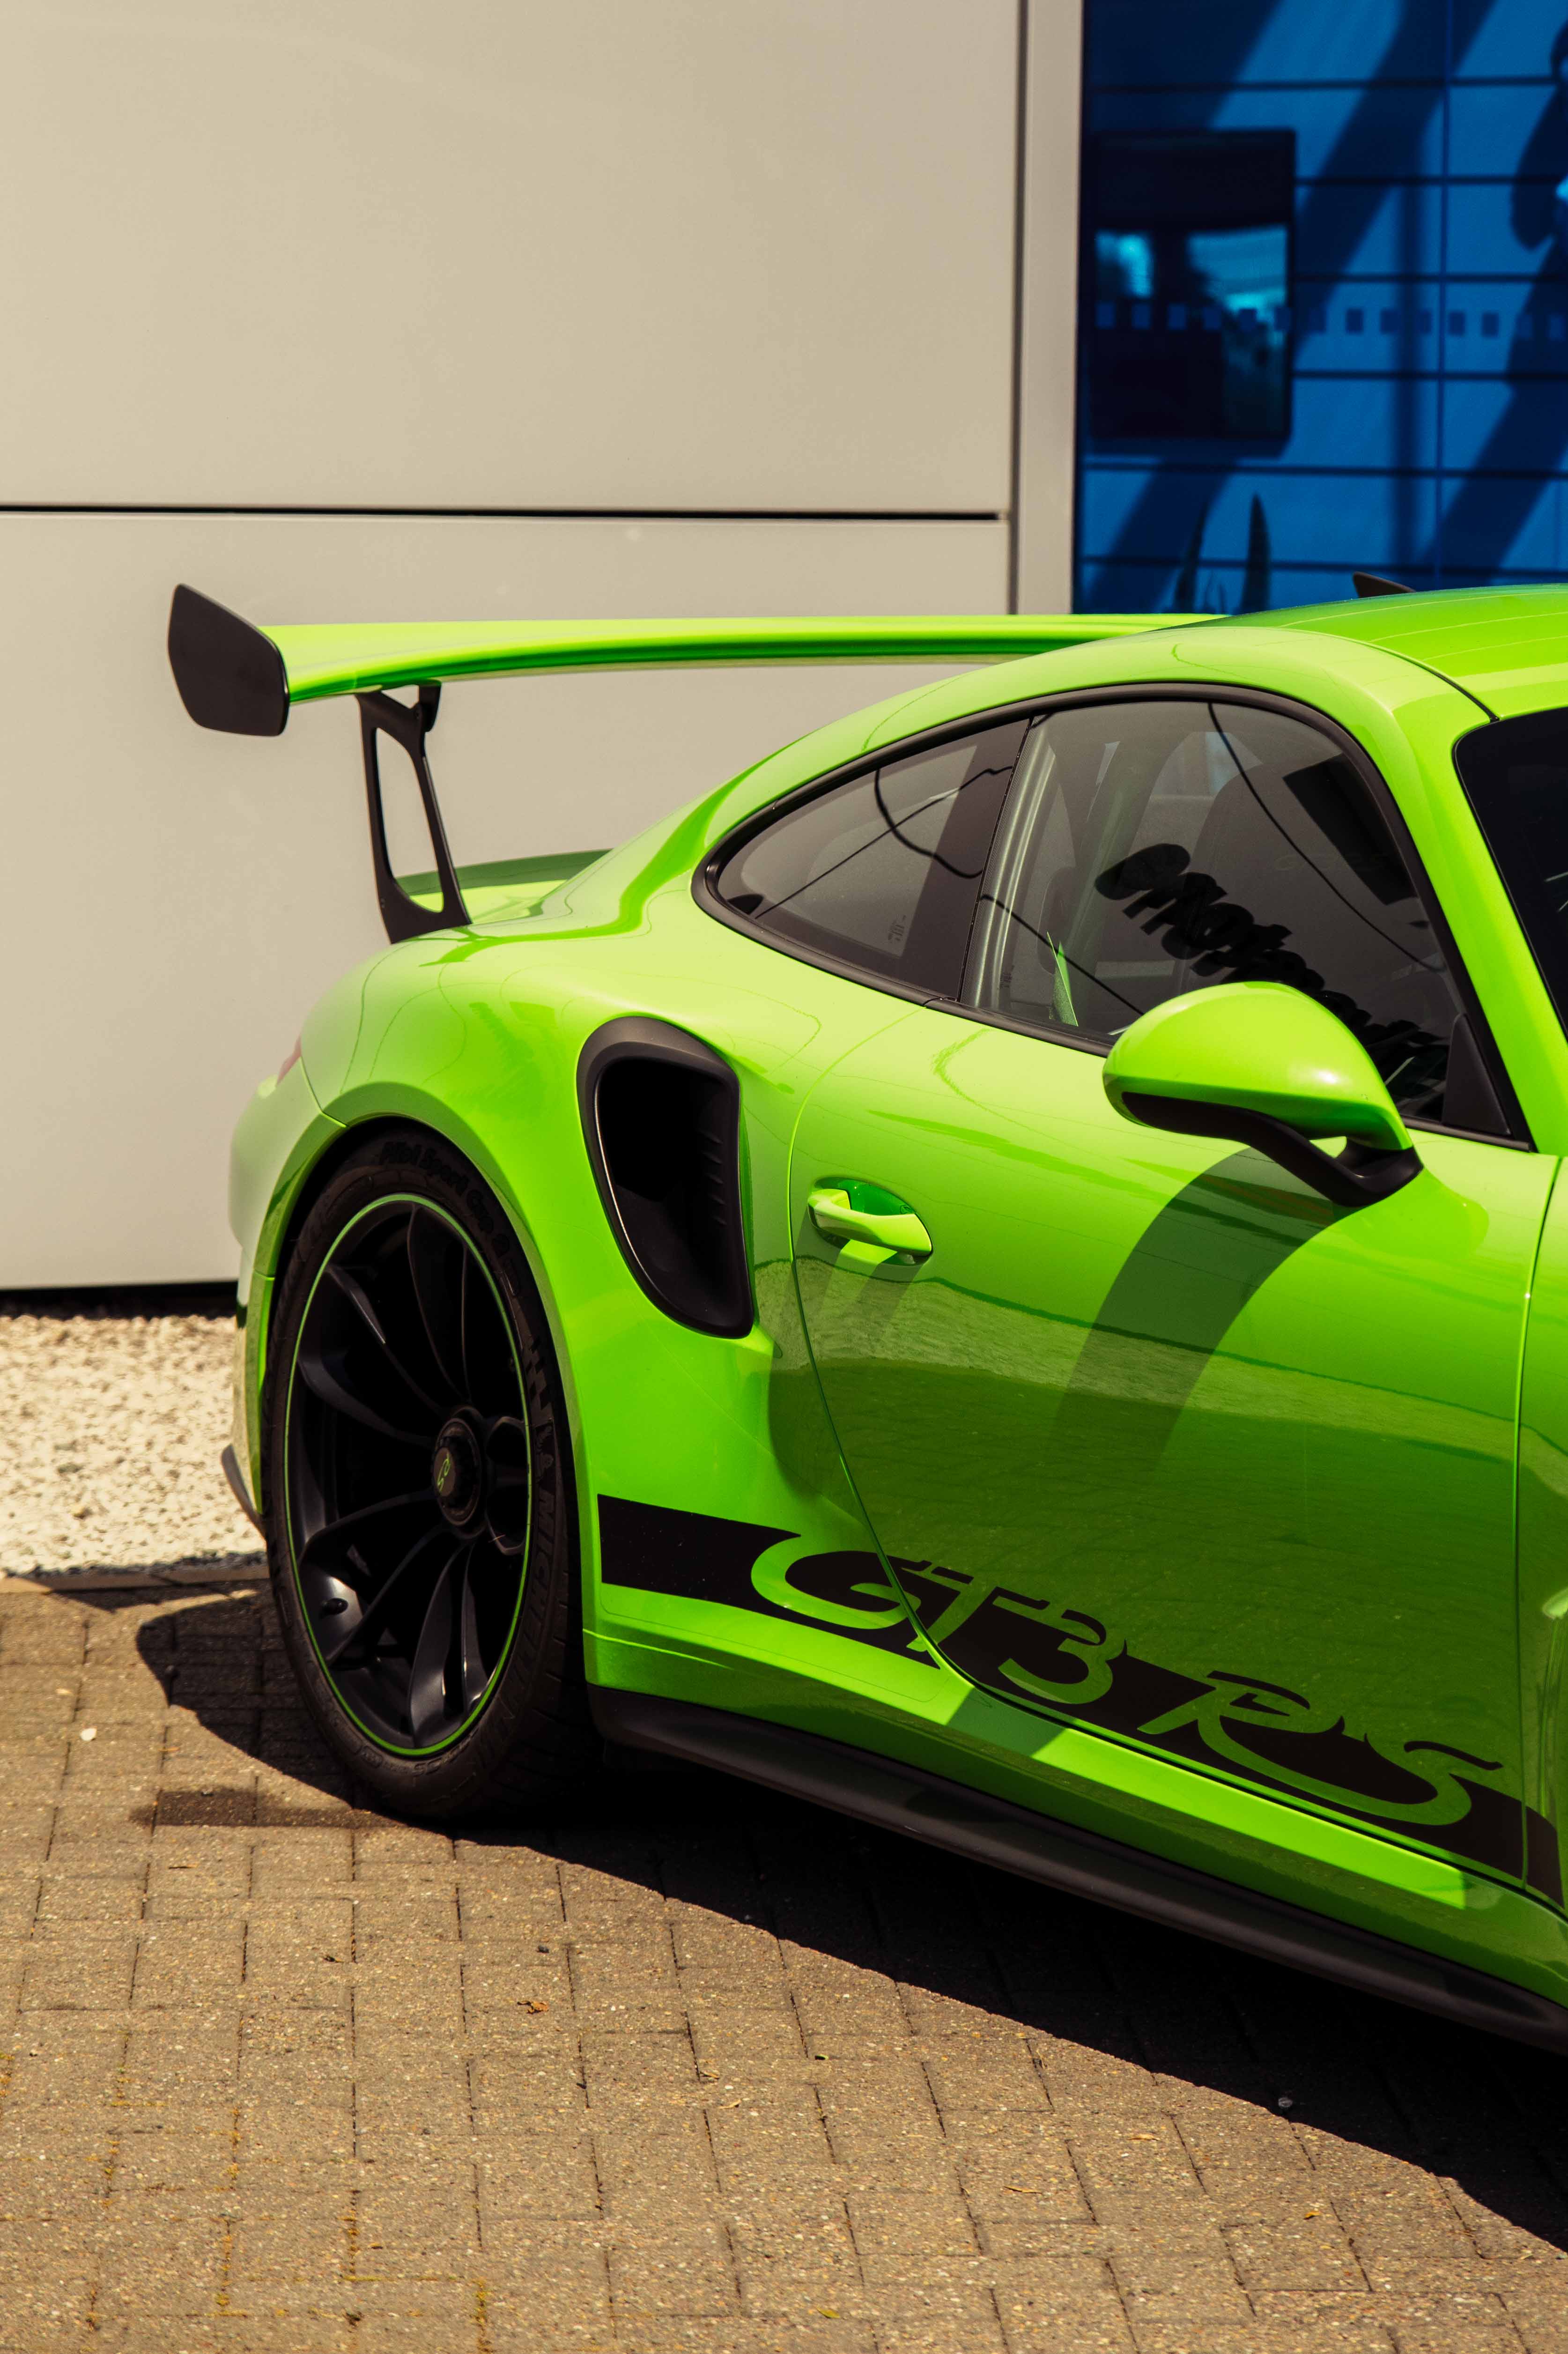 Bright green Porsche GT3RS